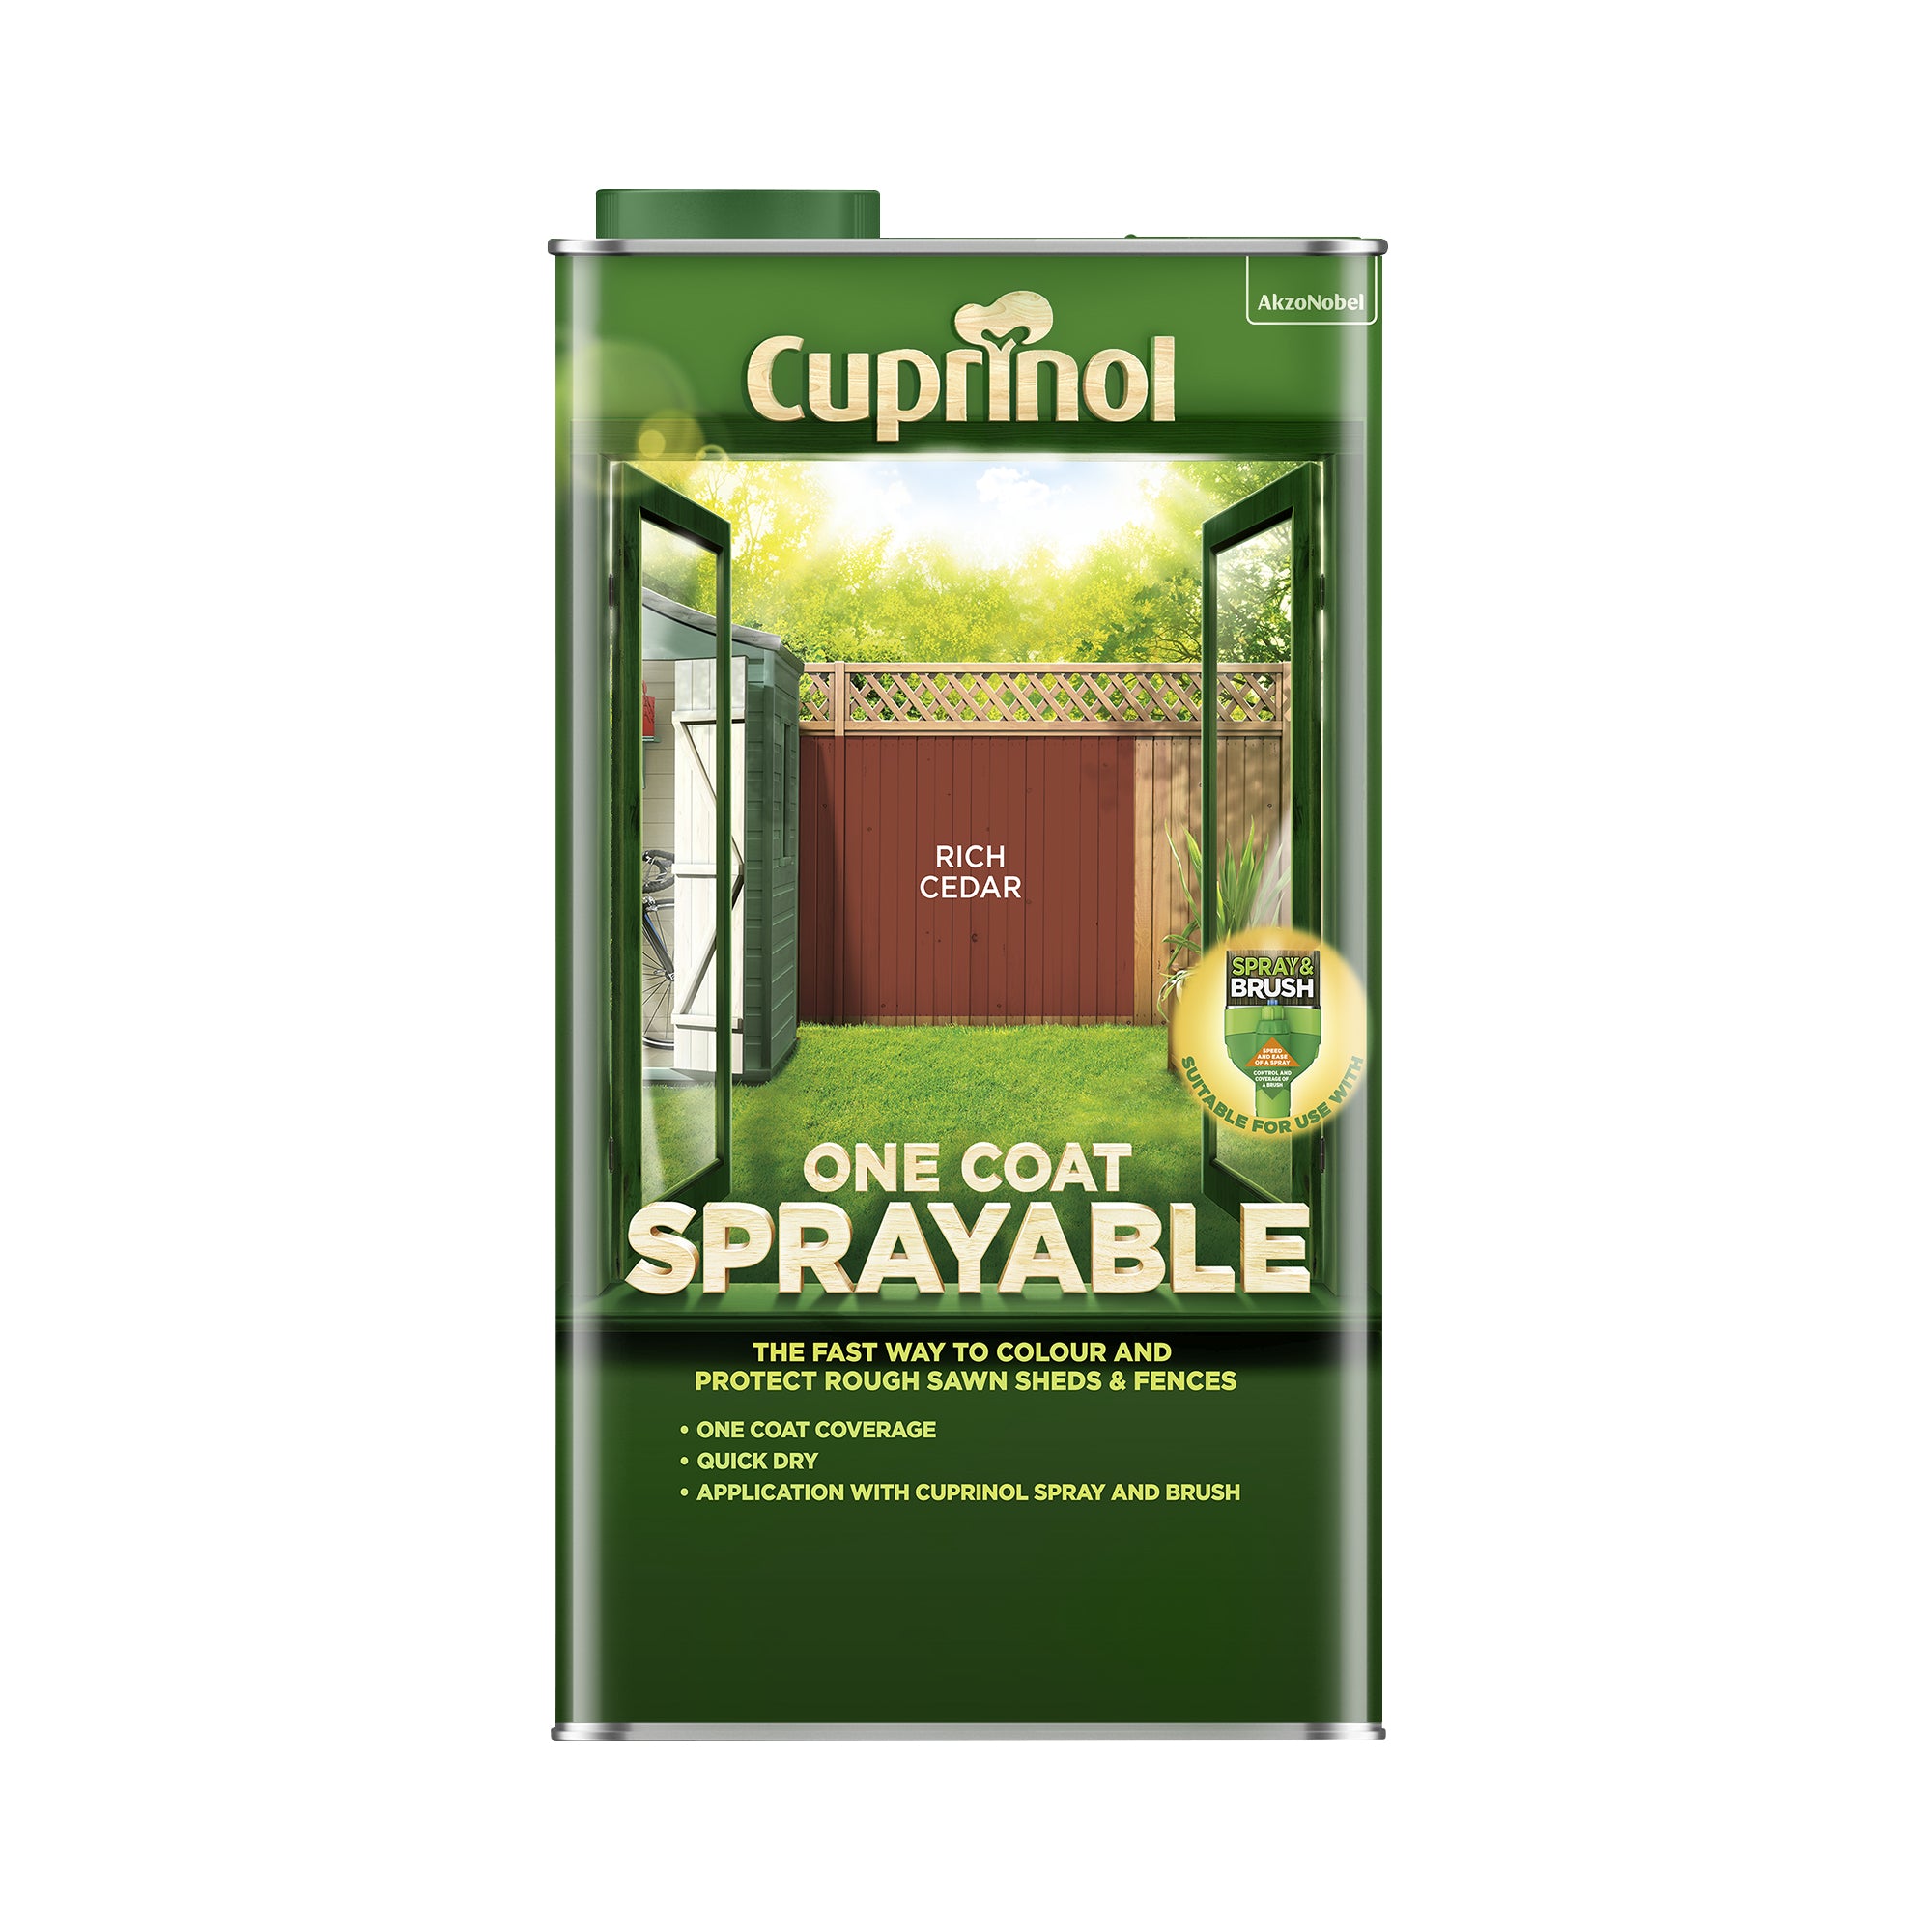 Cuprinol Spray & Fence Treatment Rich Cedar 5L